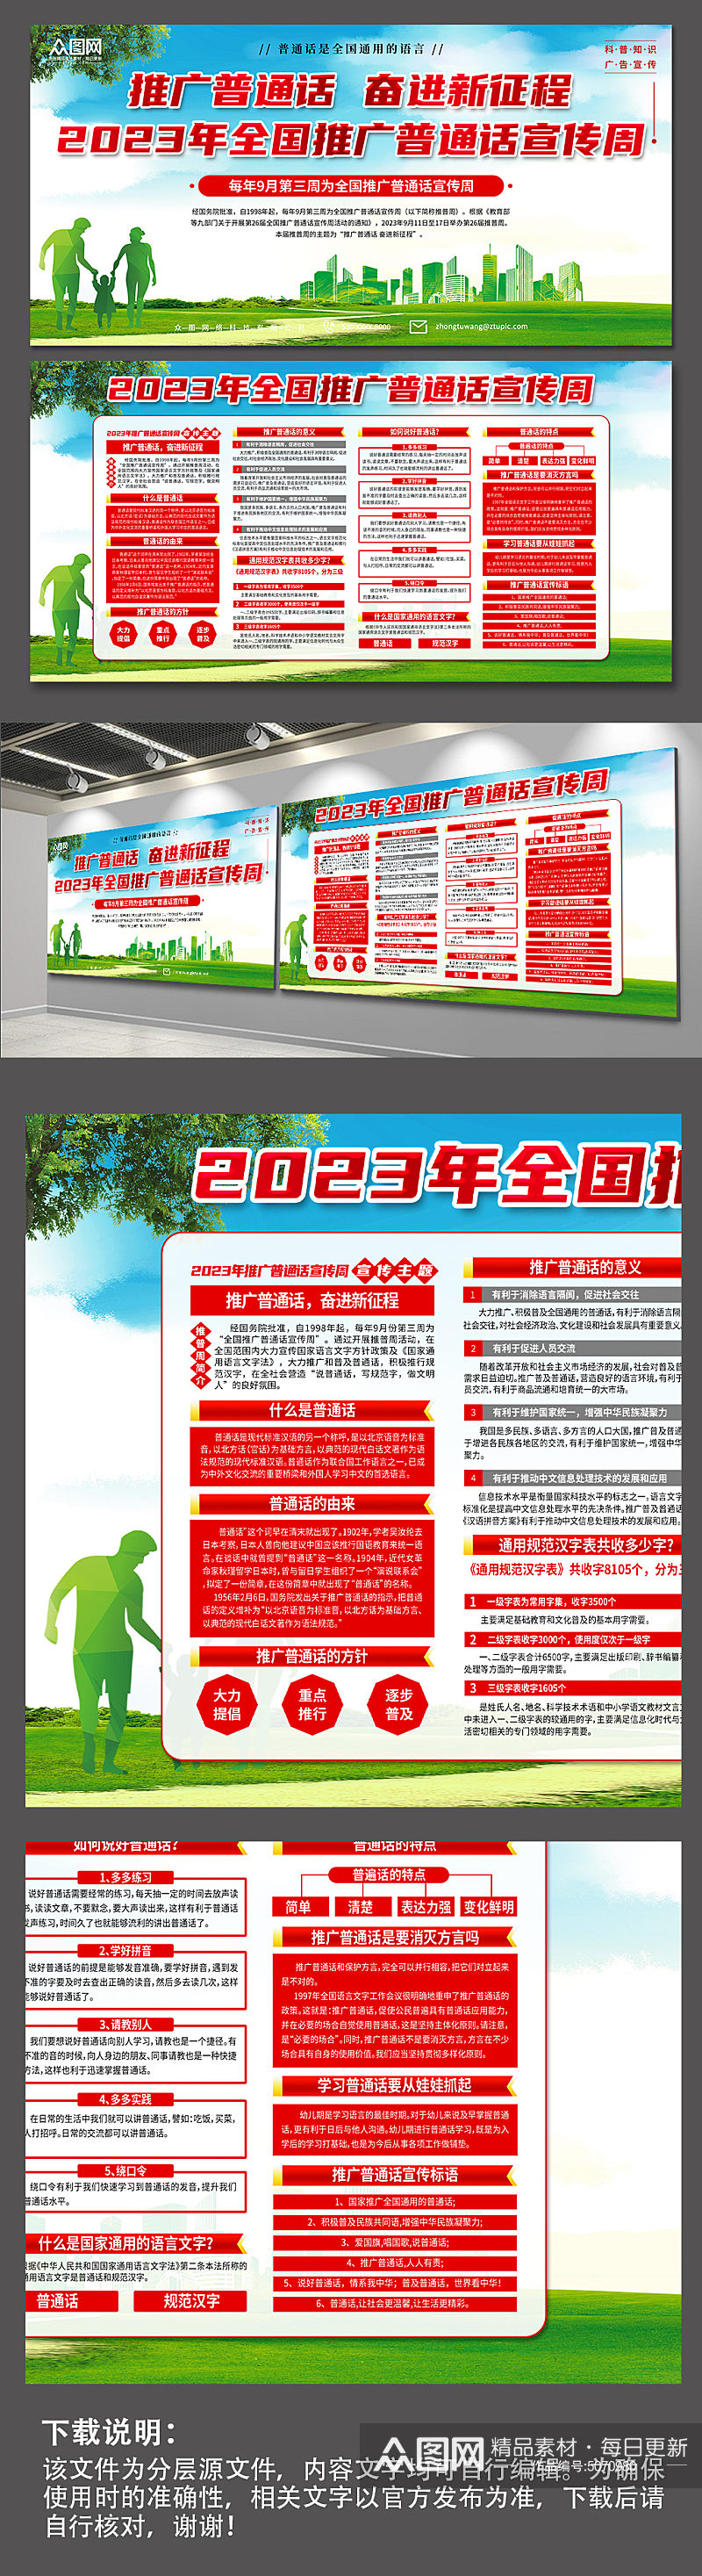 2023年全国推广普通话宣传周展板素材